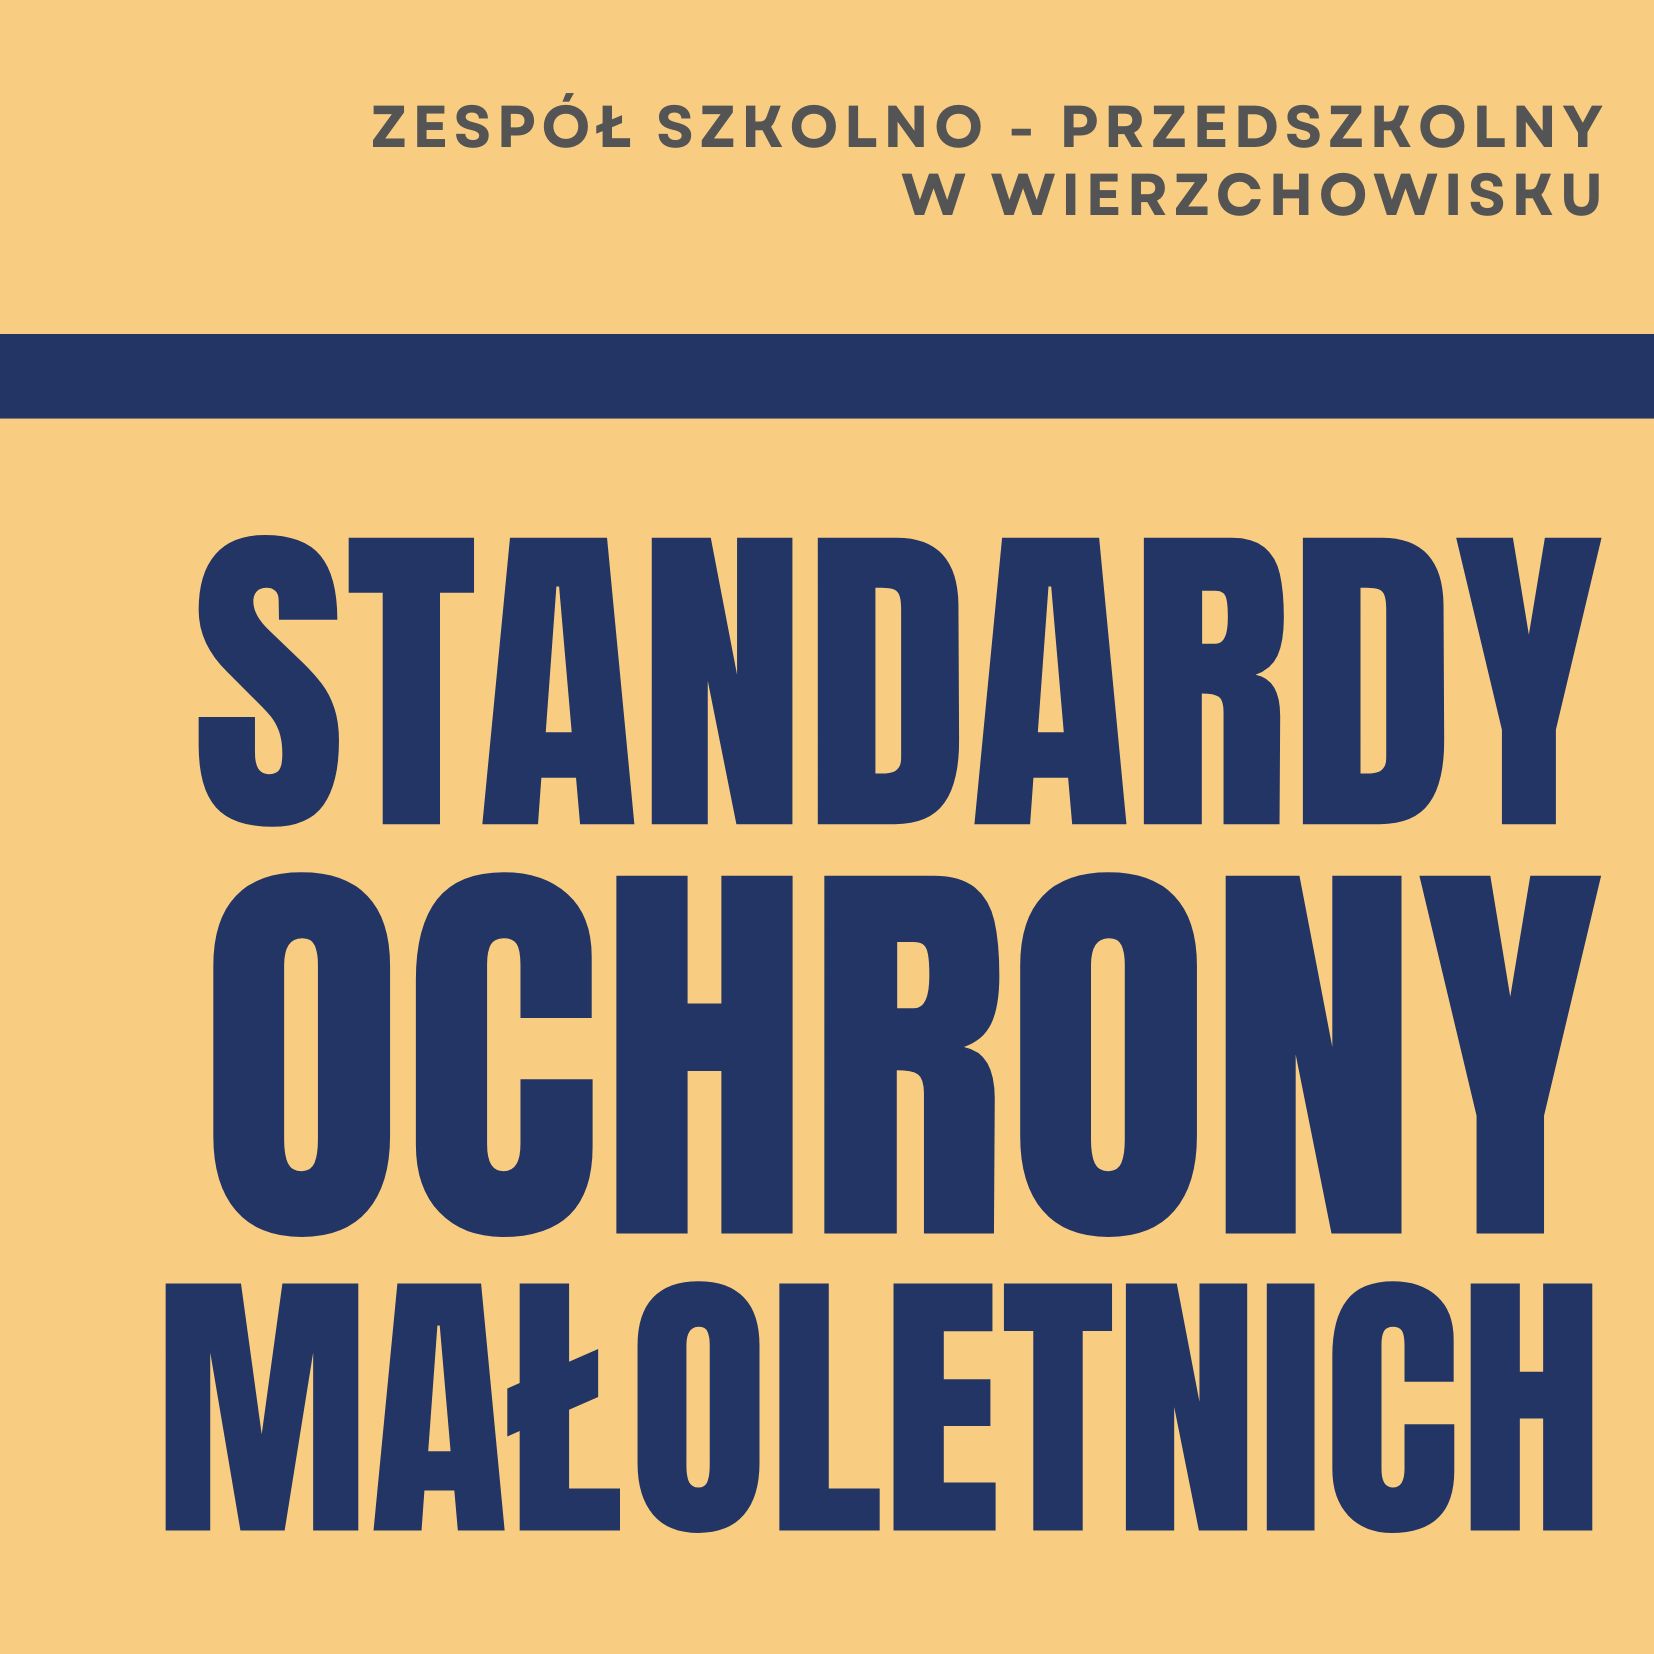 STANDARDY_OCHRONY_MAOLETNICH.jpg